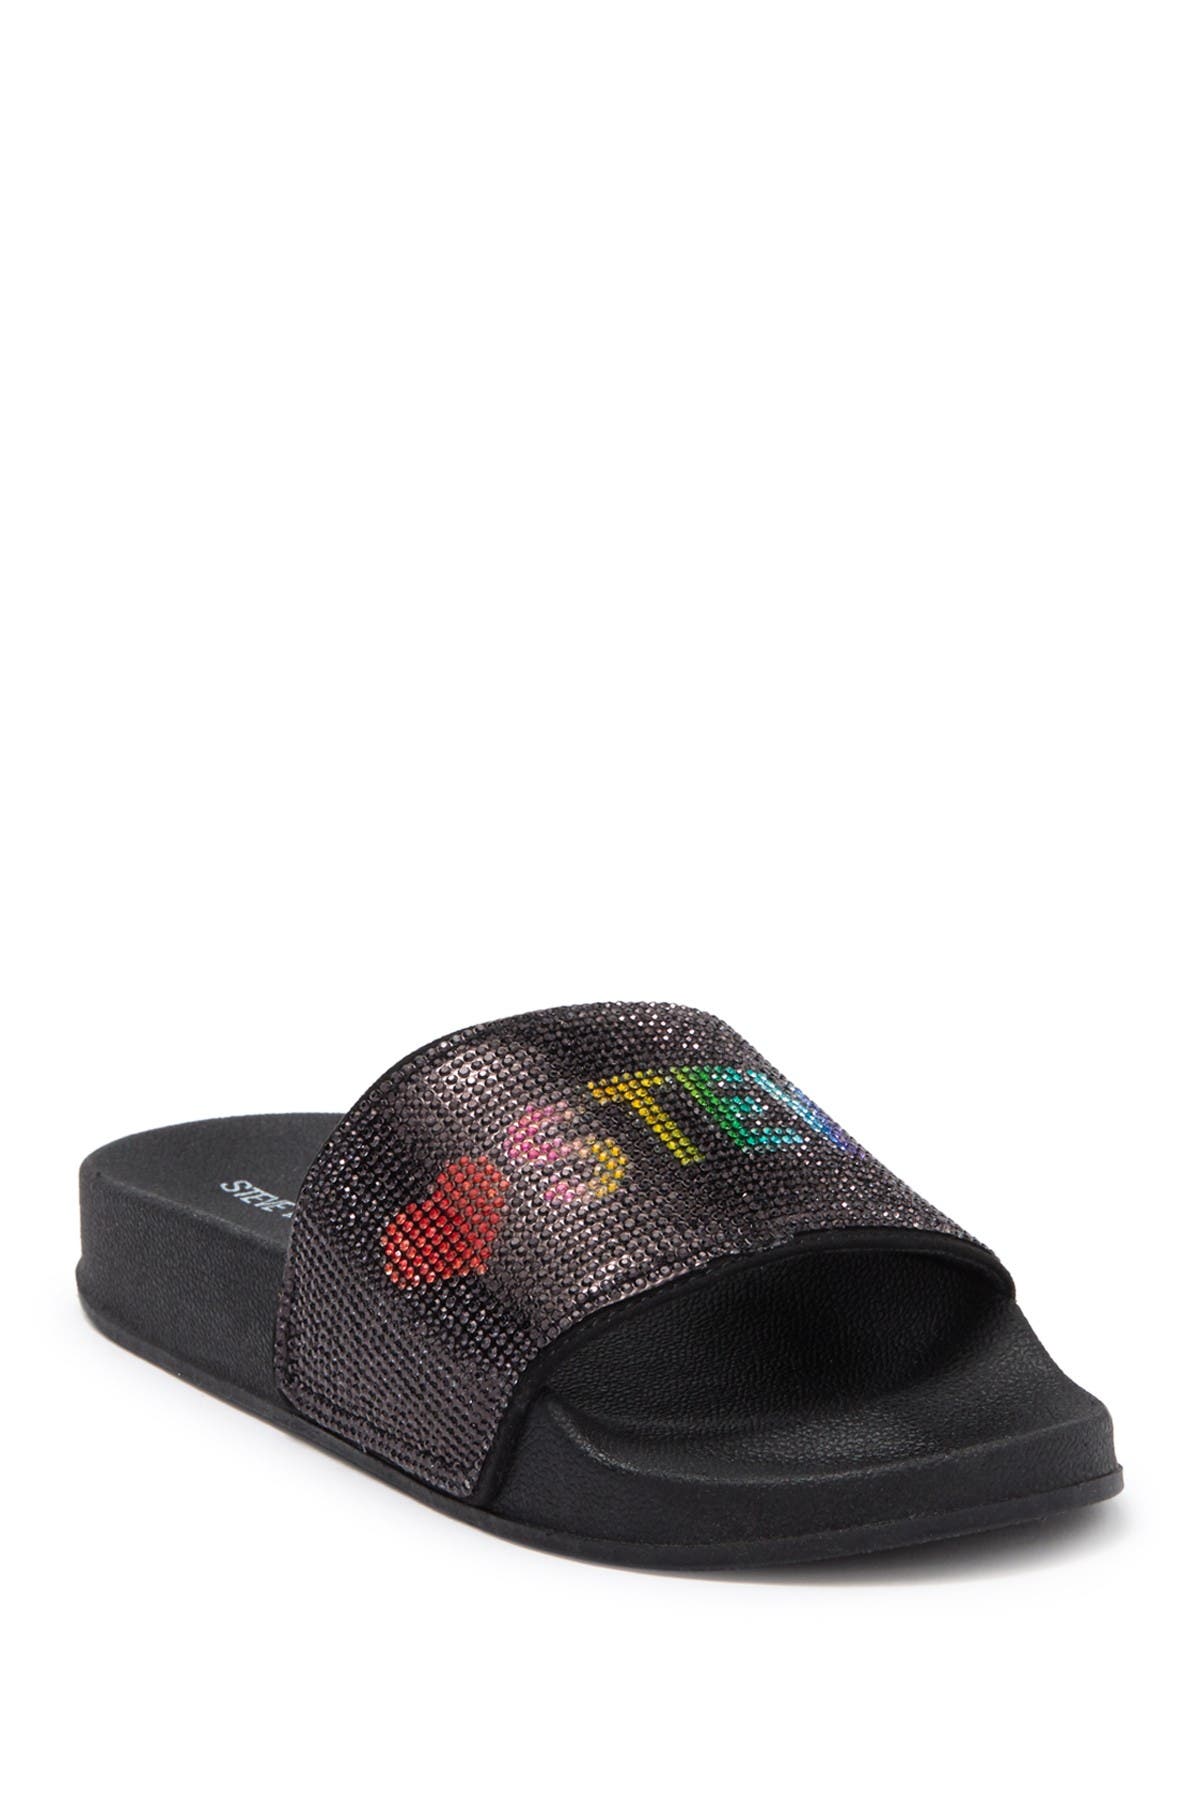 Steve Madden Kids' Best Embellished Slide Sandal In Black